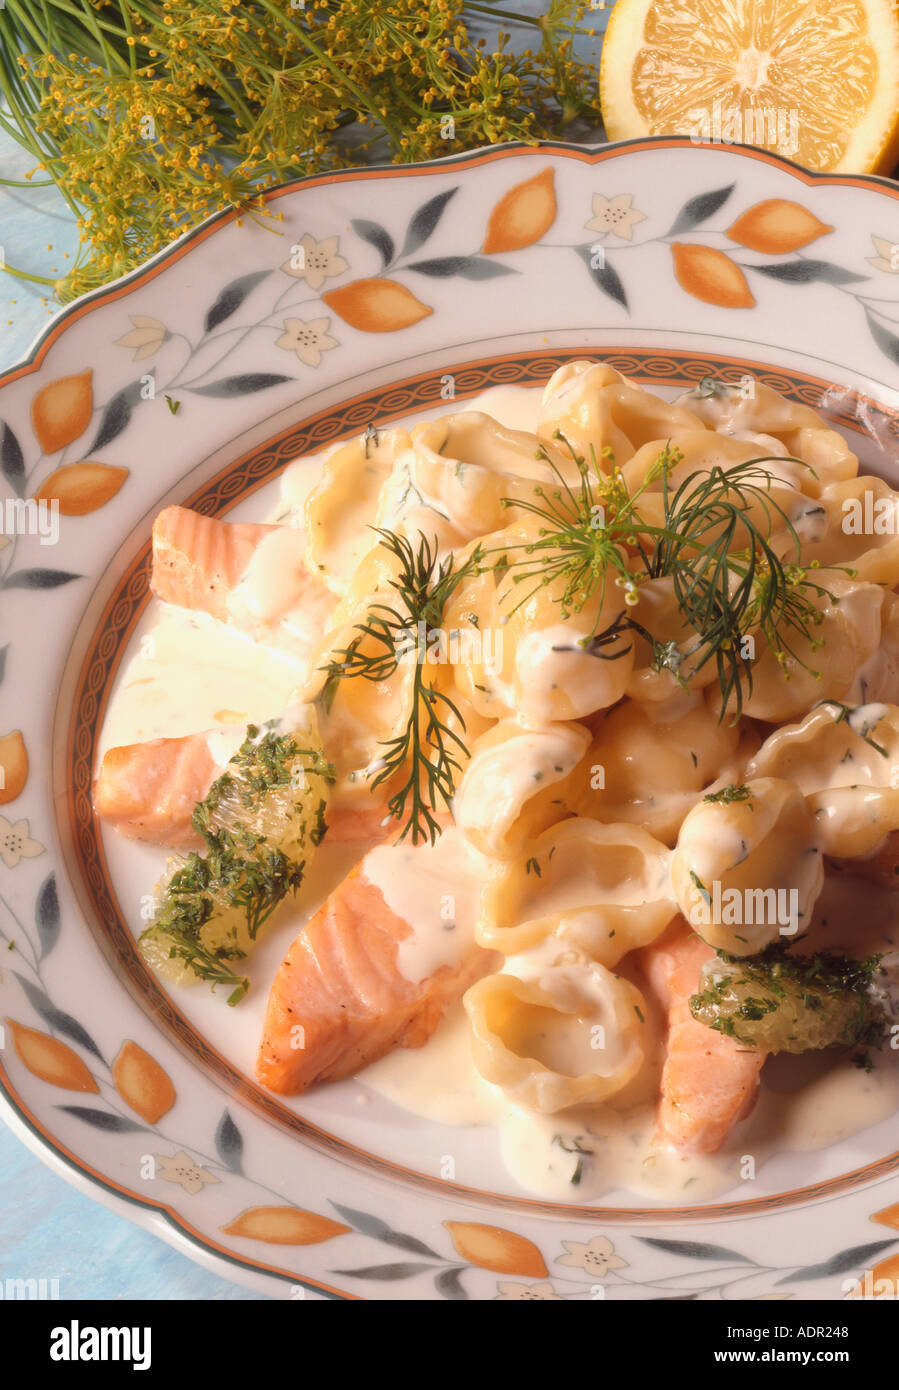 Nudeln mit Lachs und Orangenstückchen Aneth saumon nouilles avec de l'aneth et pièces d'orange Banque D'Images